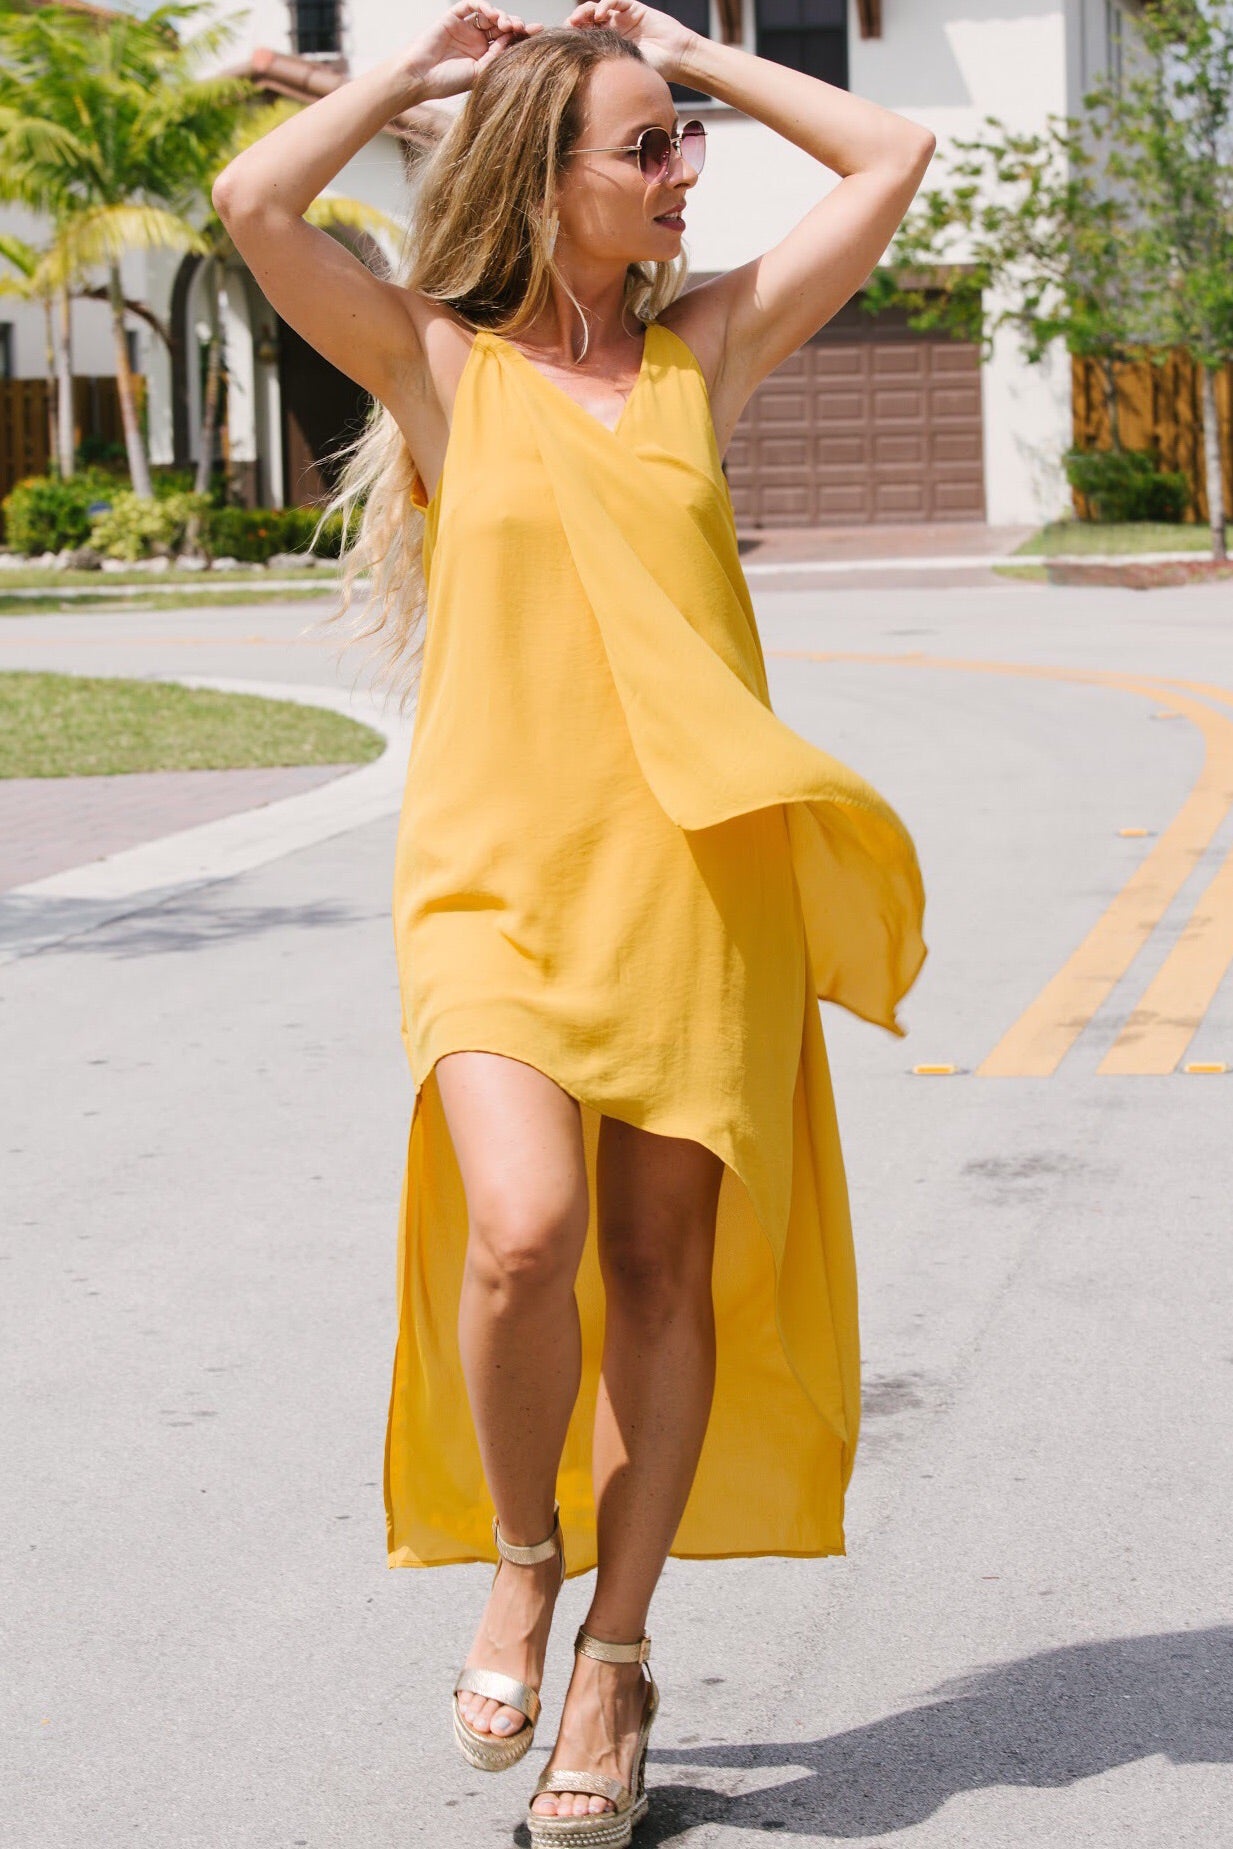 yellow asymmetrical dress